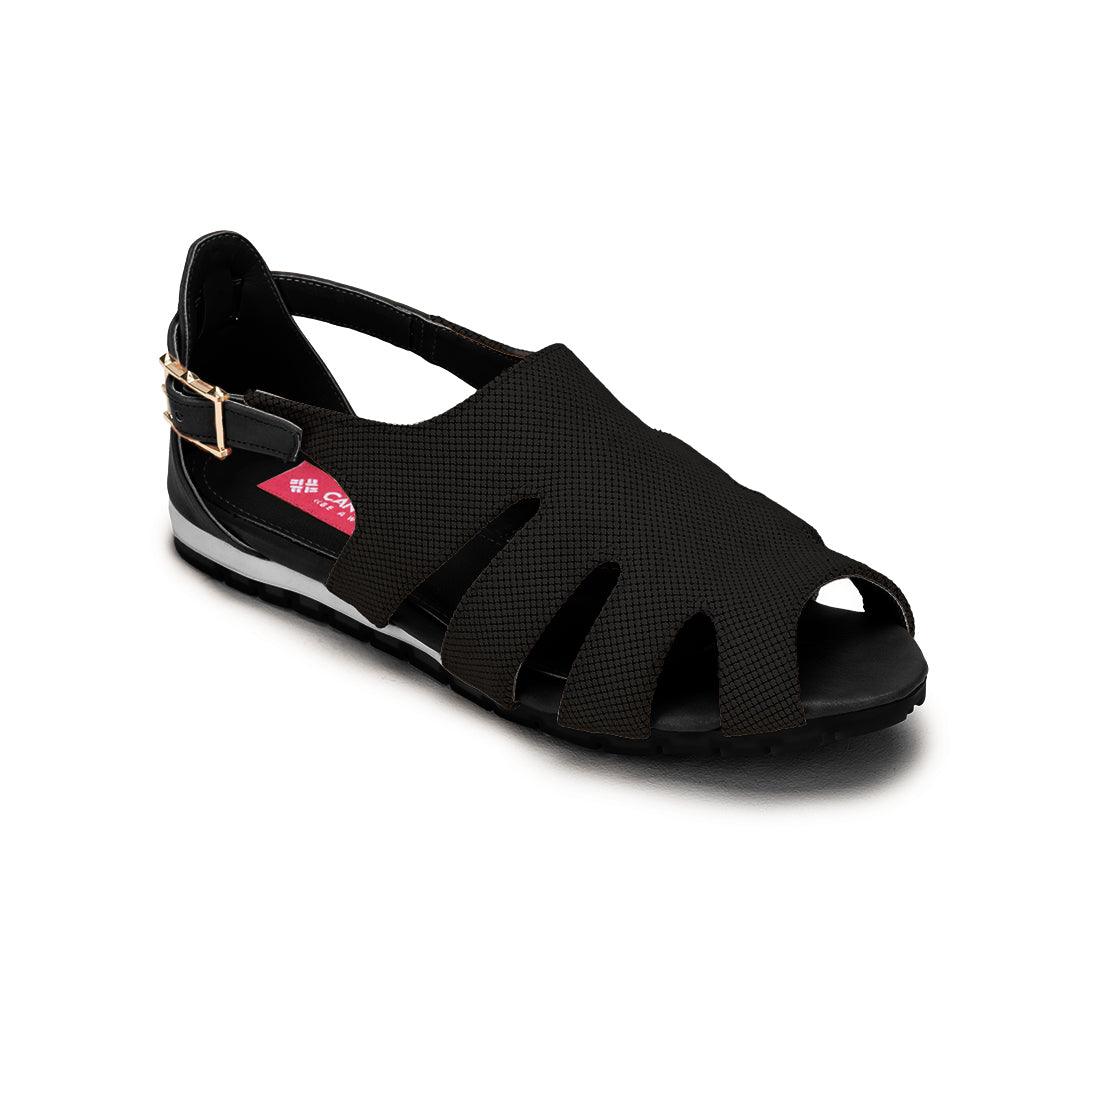 Black Spider Toe Sandal Solid Black - CANVAEGYPT